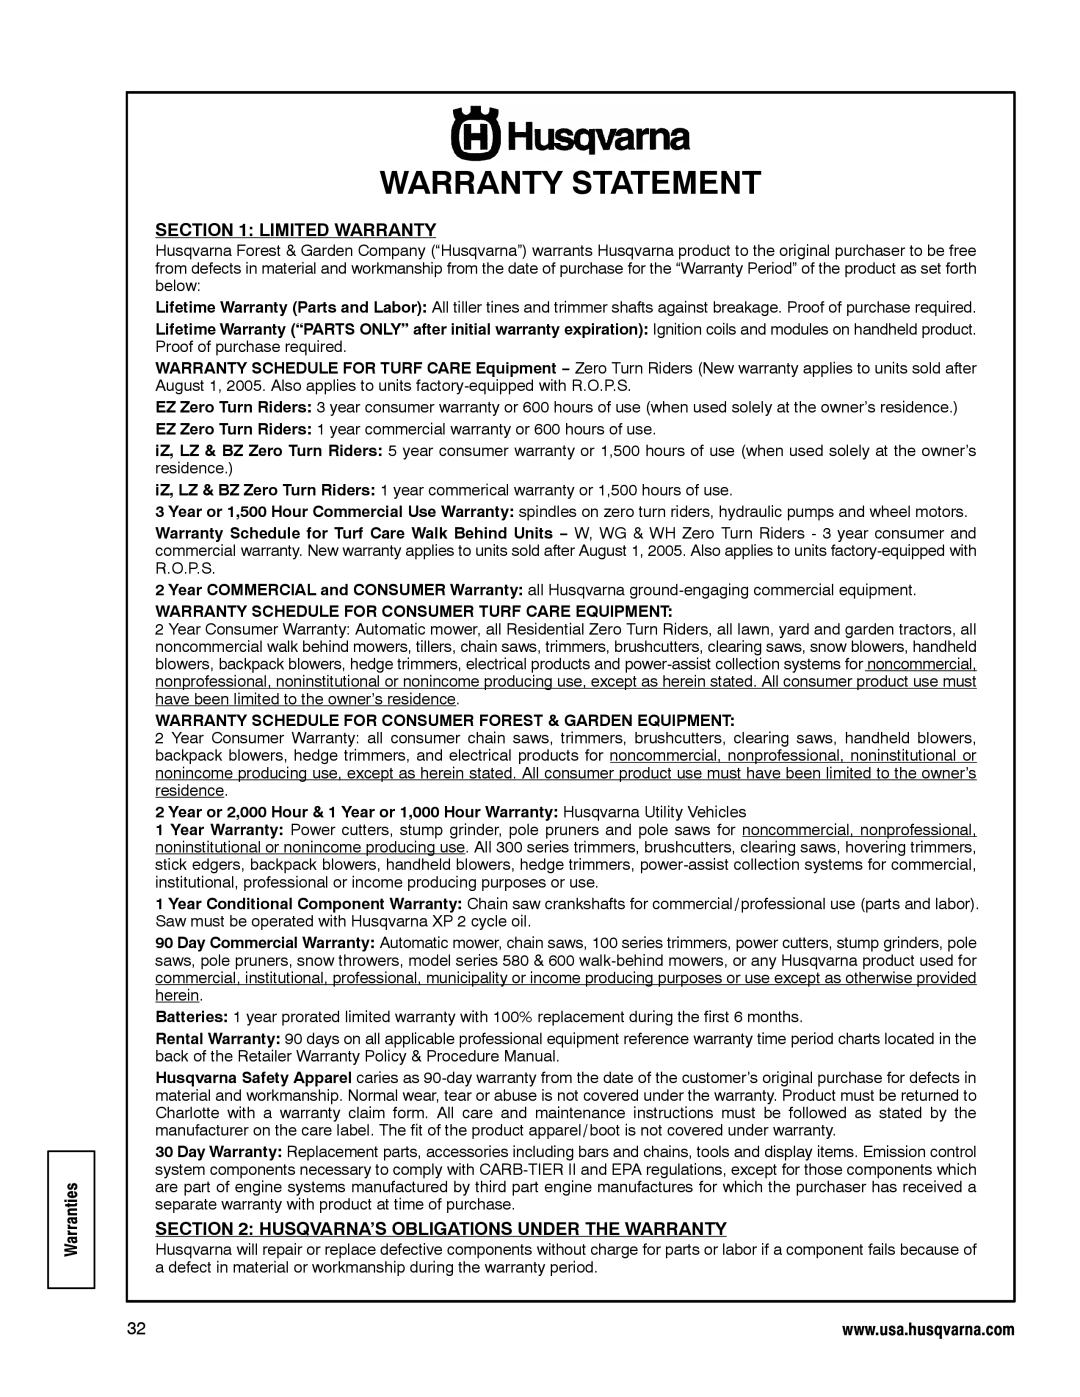 Husqvarna LE389 manual Warranty Statement, Warranties, Limited Warranty, Husqvarna’S Obligations Under The Warranty 